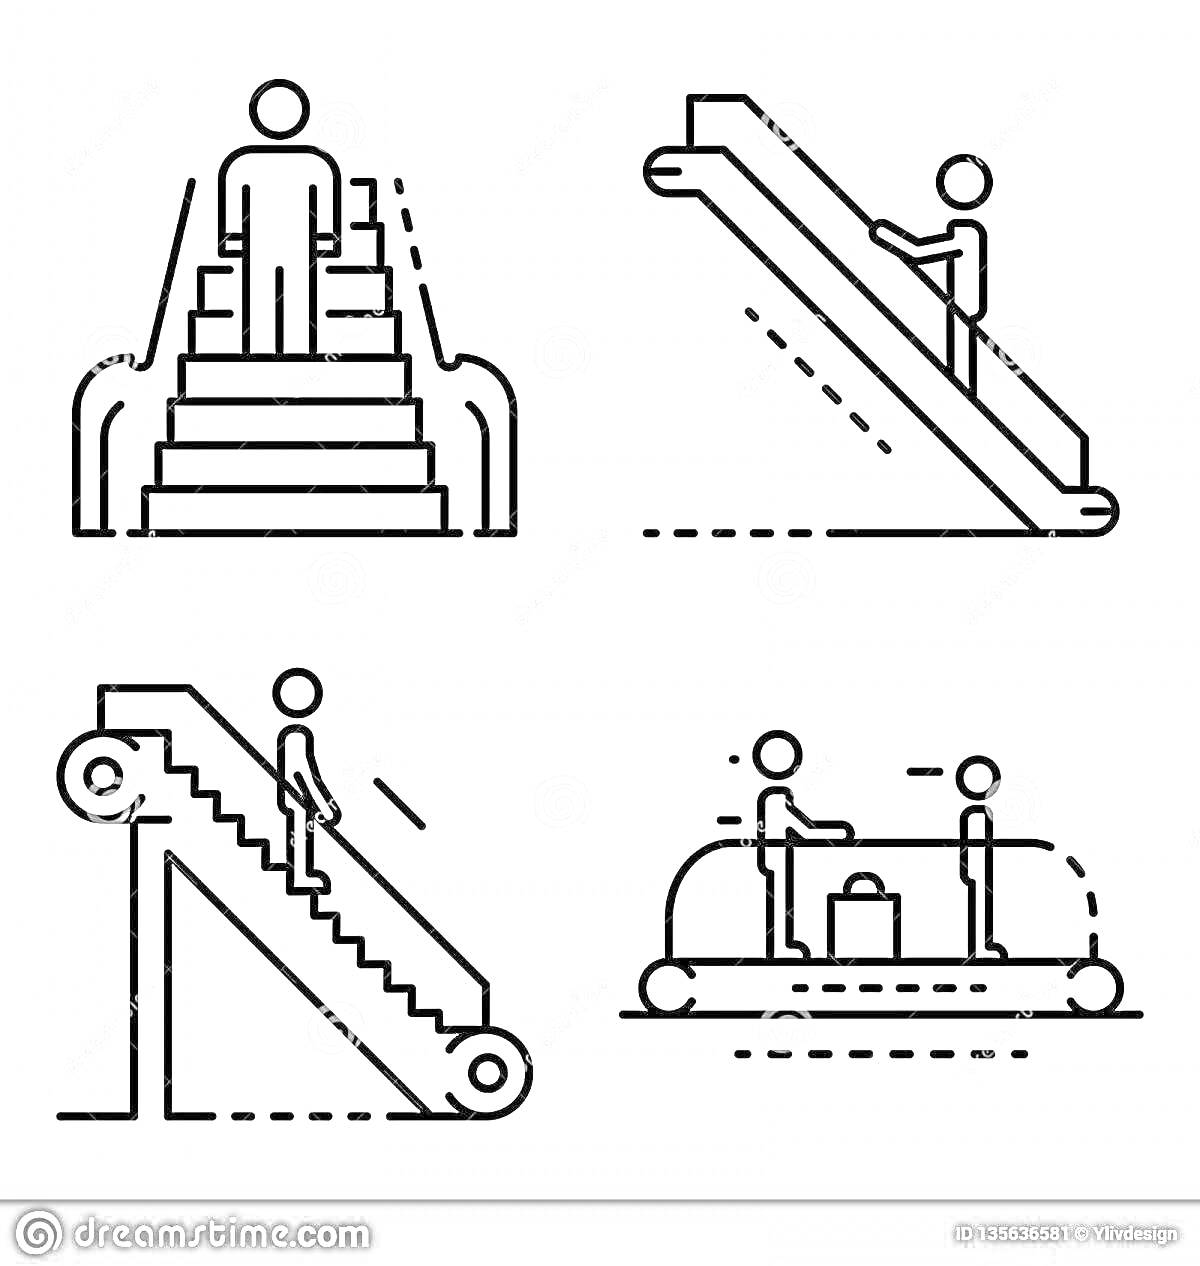 Раскраска Четыре вида движения при помощи эскалатора и лестницы – человек на лестнице, человек на эскалаторе, рисунок сбоку человека на эскалаторе, люди на движущейся дорожке с багажом